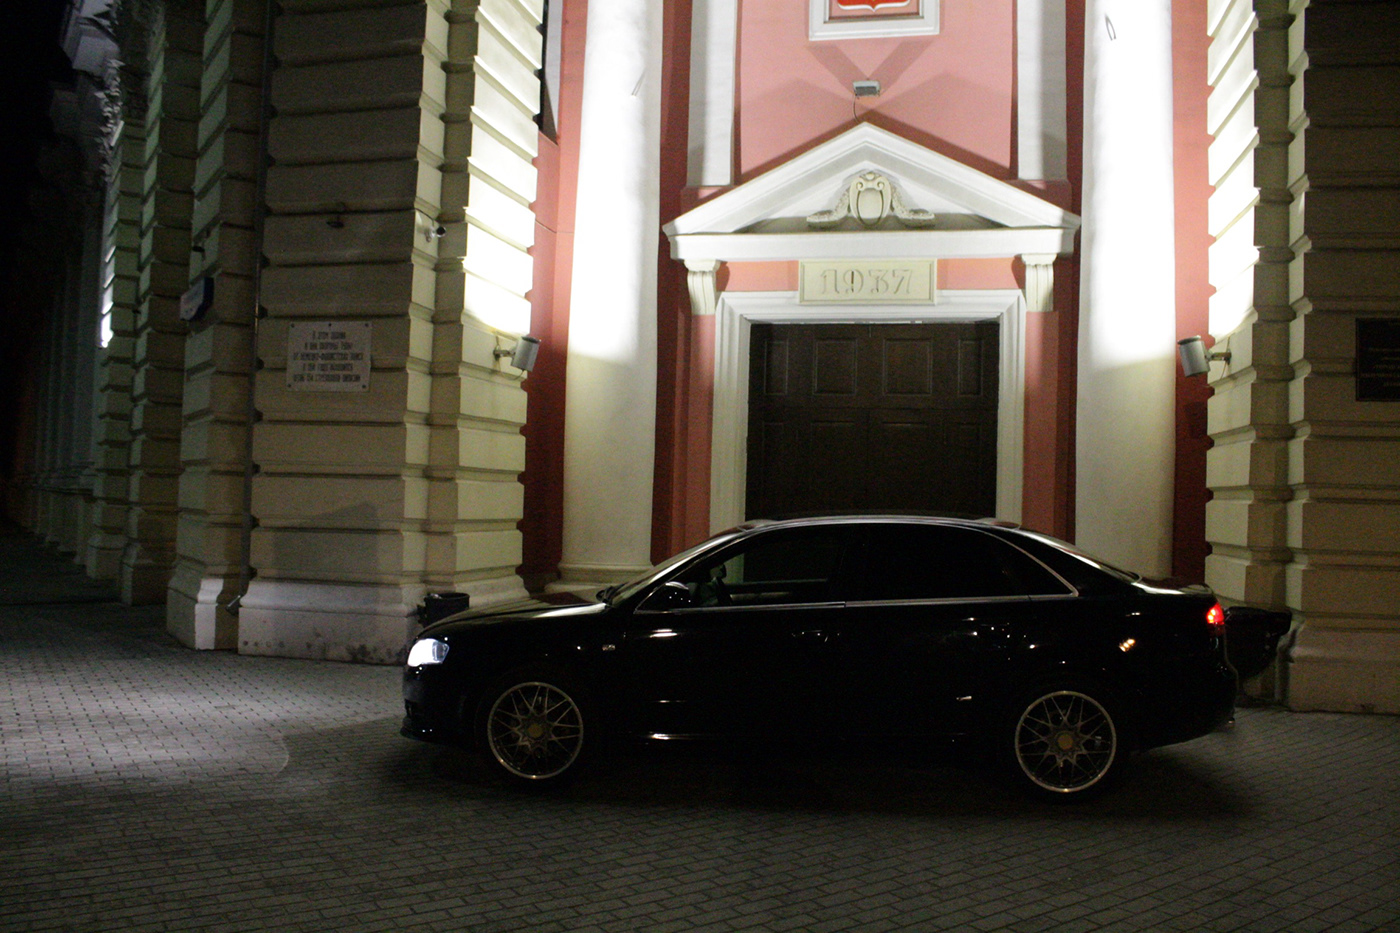 Audi a4 s line